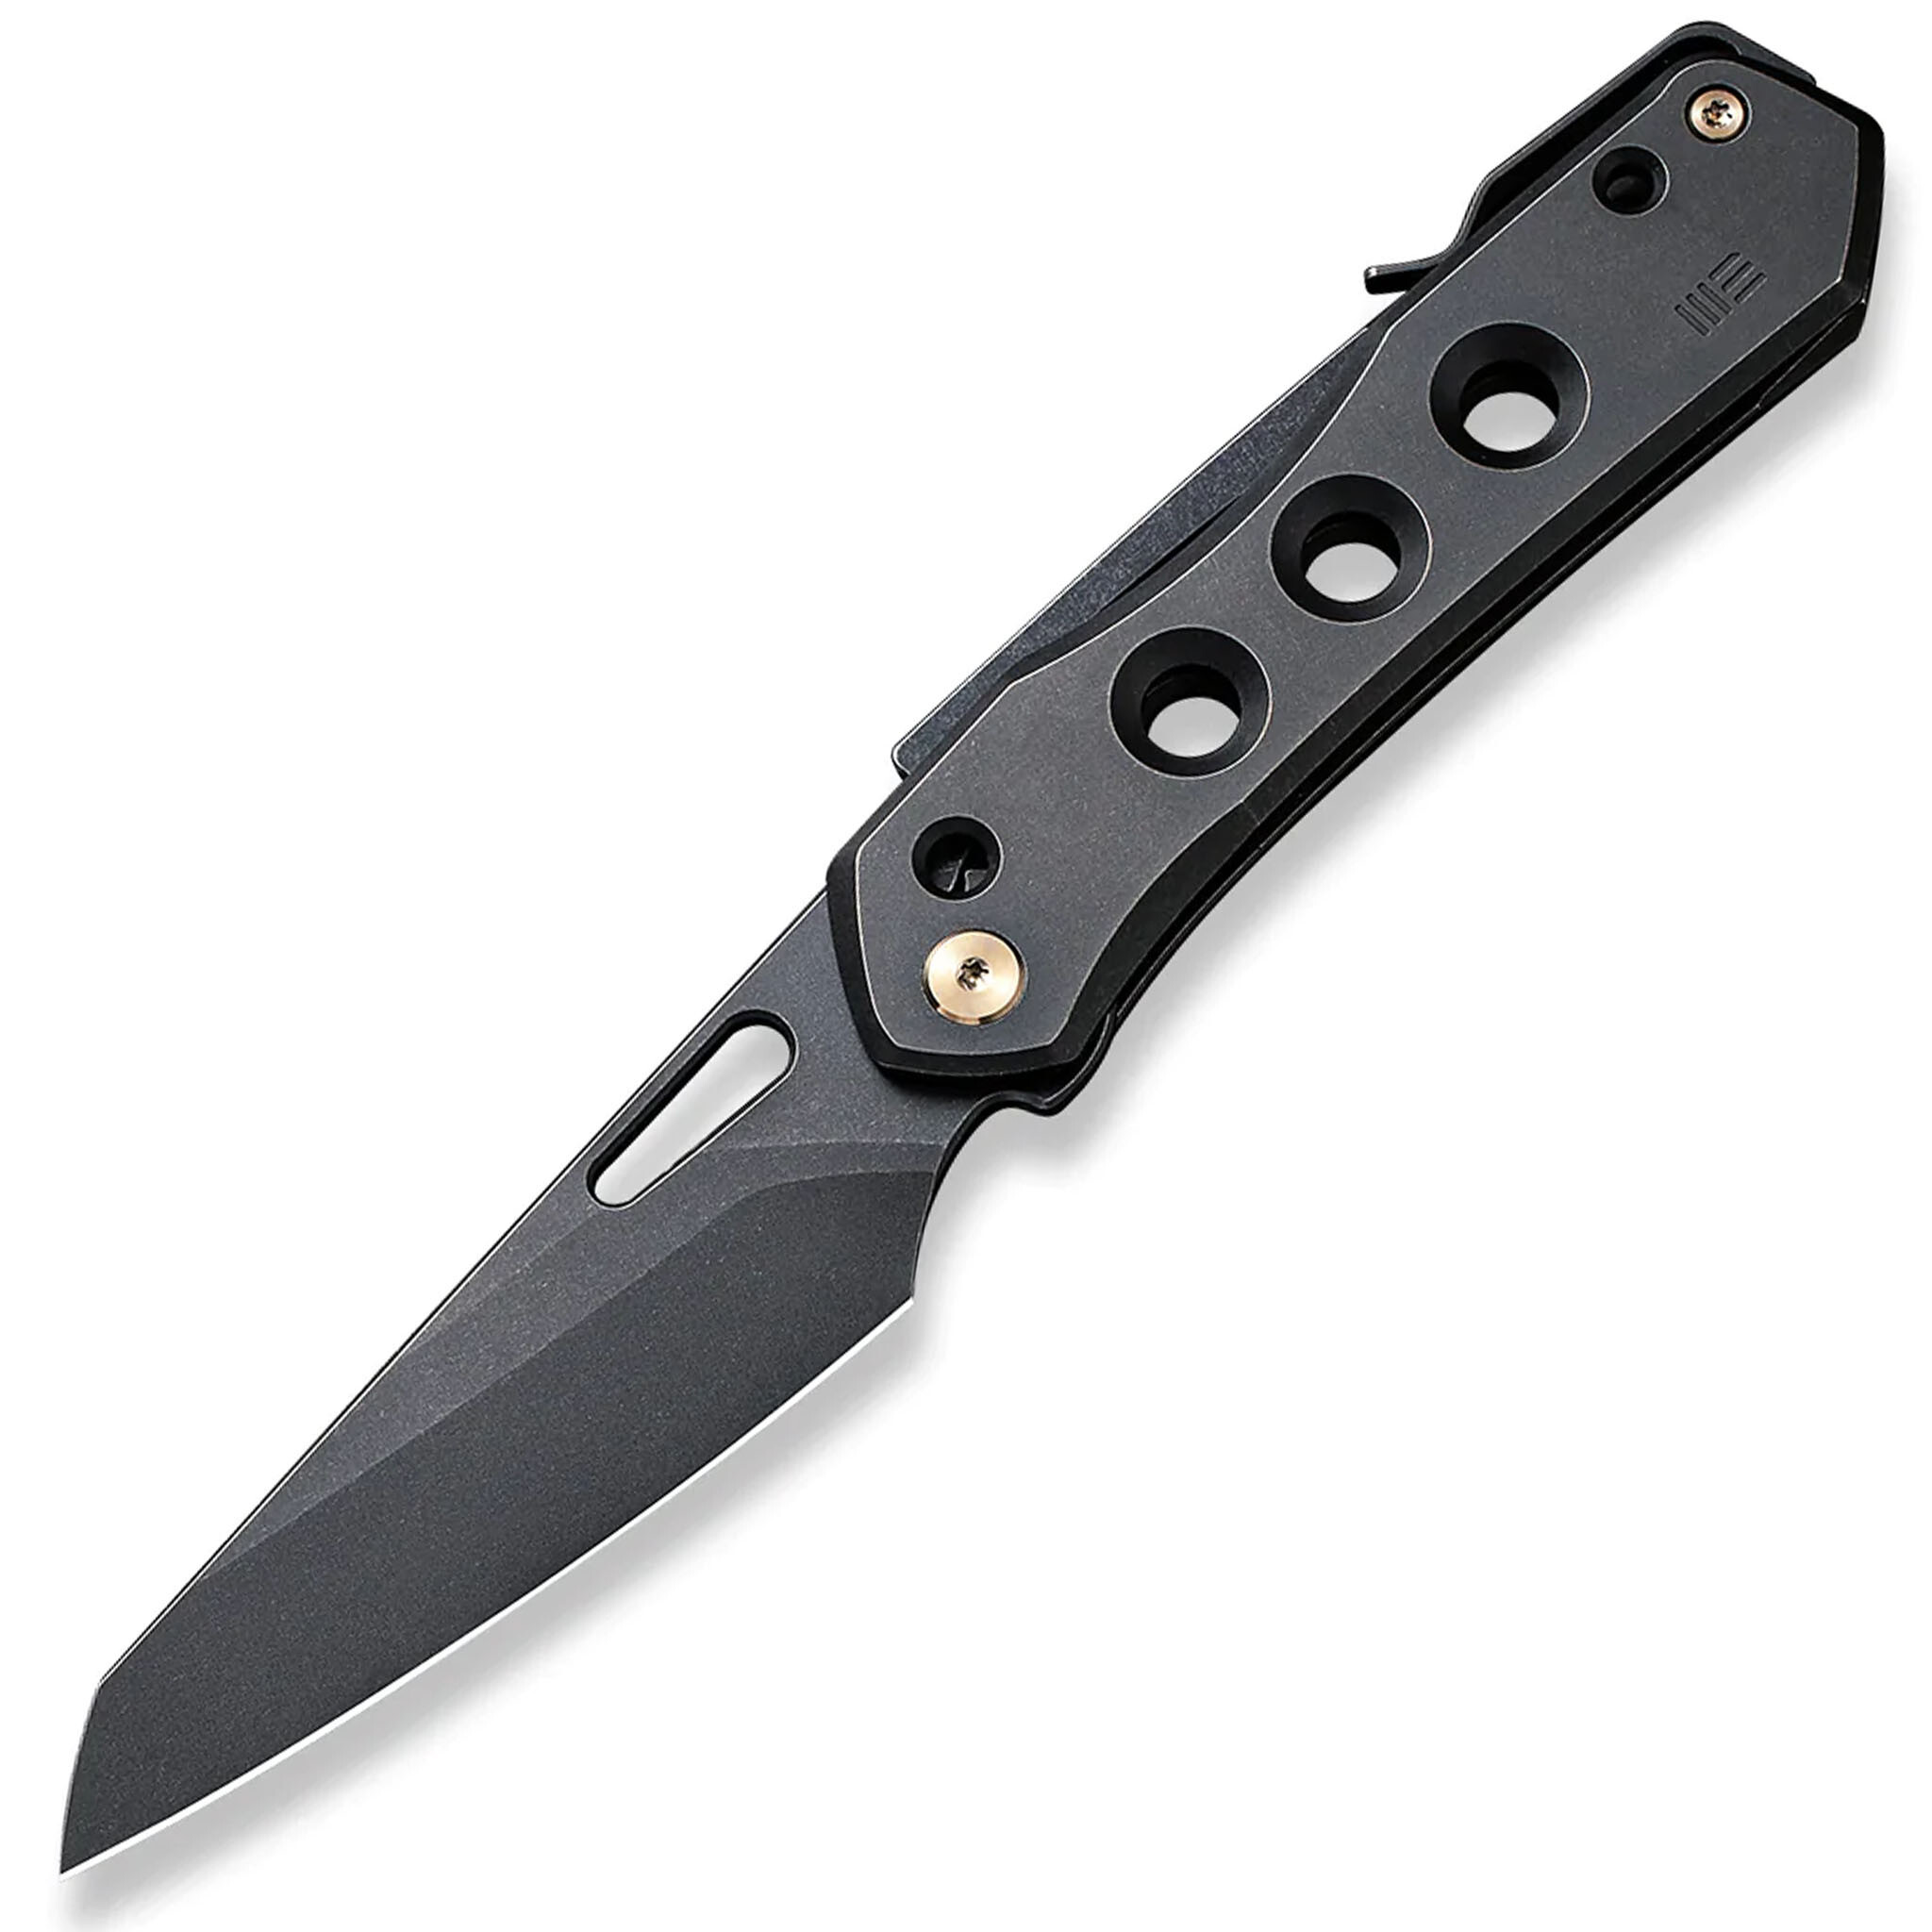 Складной нож We Knife Vision R, сталь CPM-20CV, рукоять титан складной нож zero tolerance 0990 сталь cpm 20cv рукоять carbon fiber